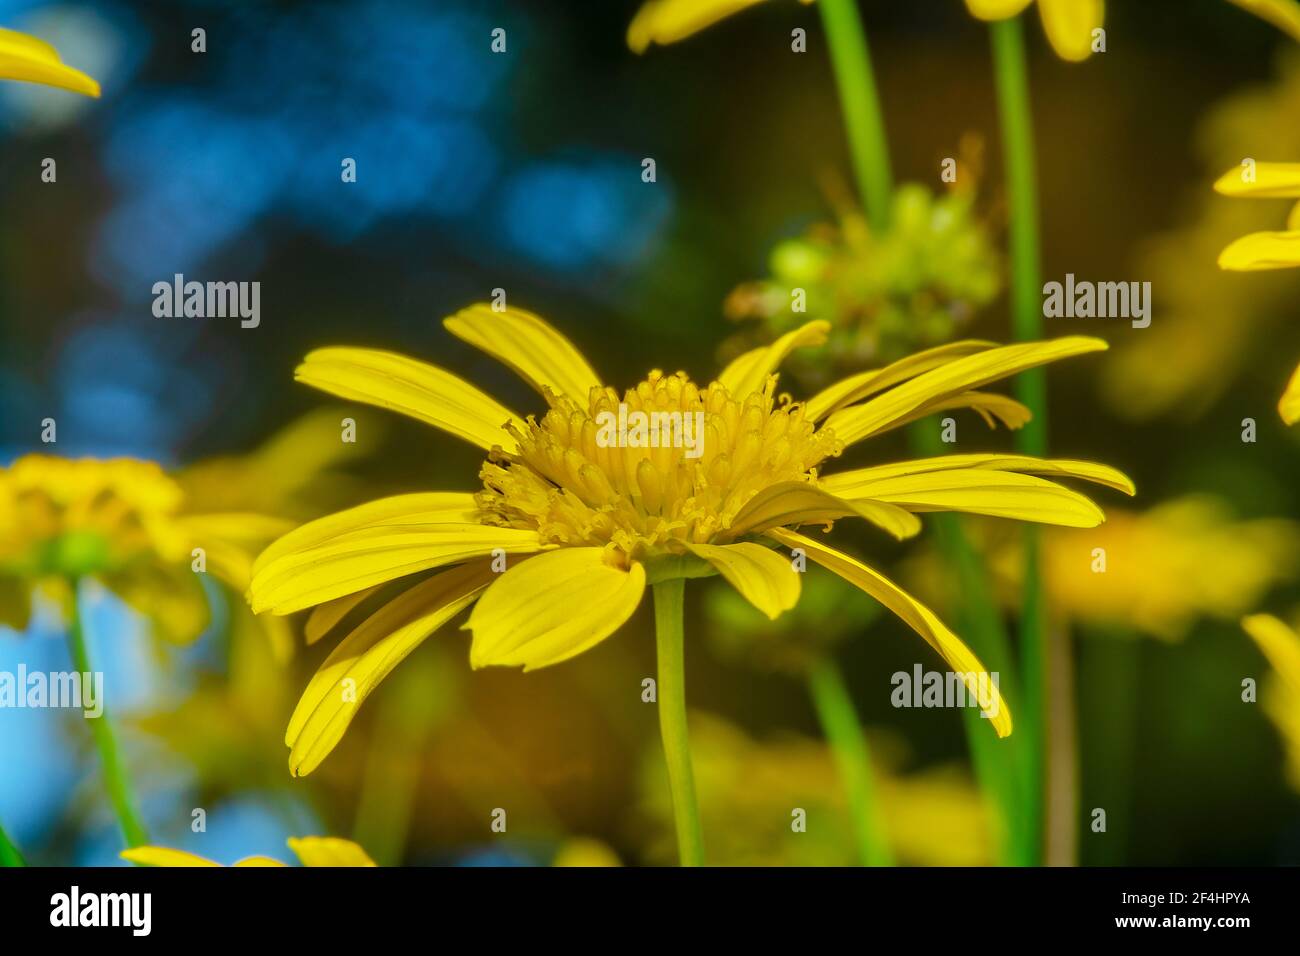 Yellow gerbera daisy in a garden Stock Photo